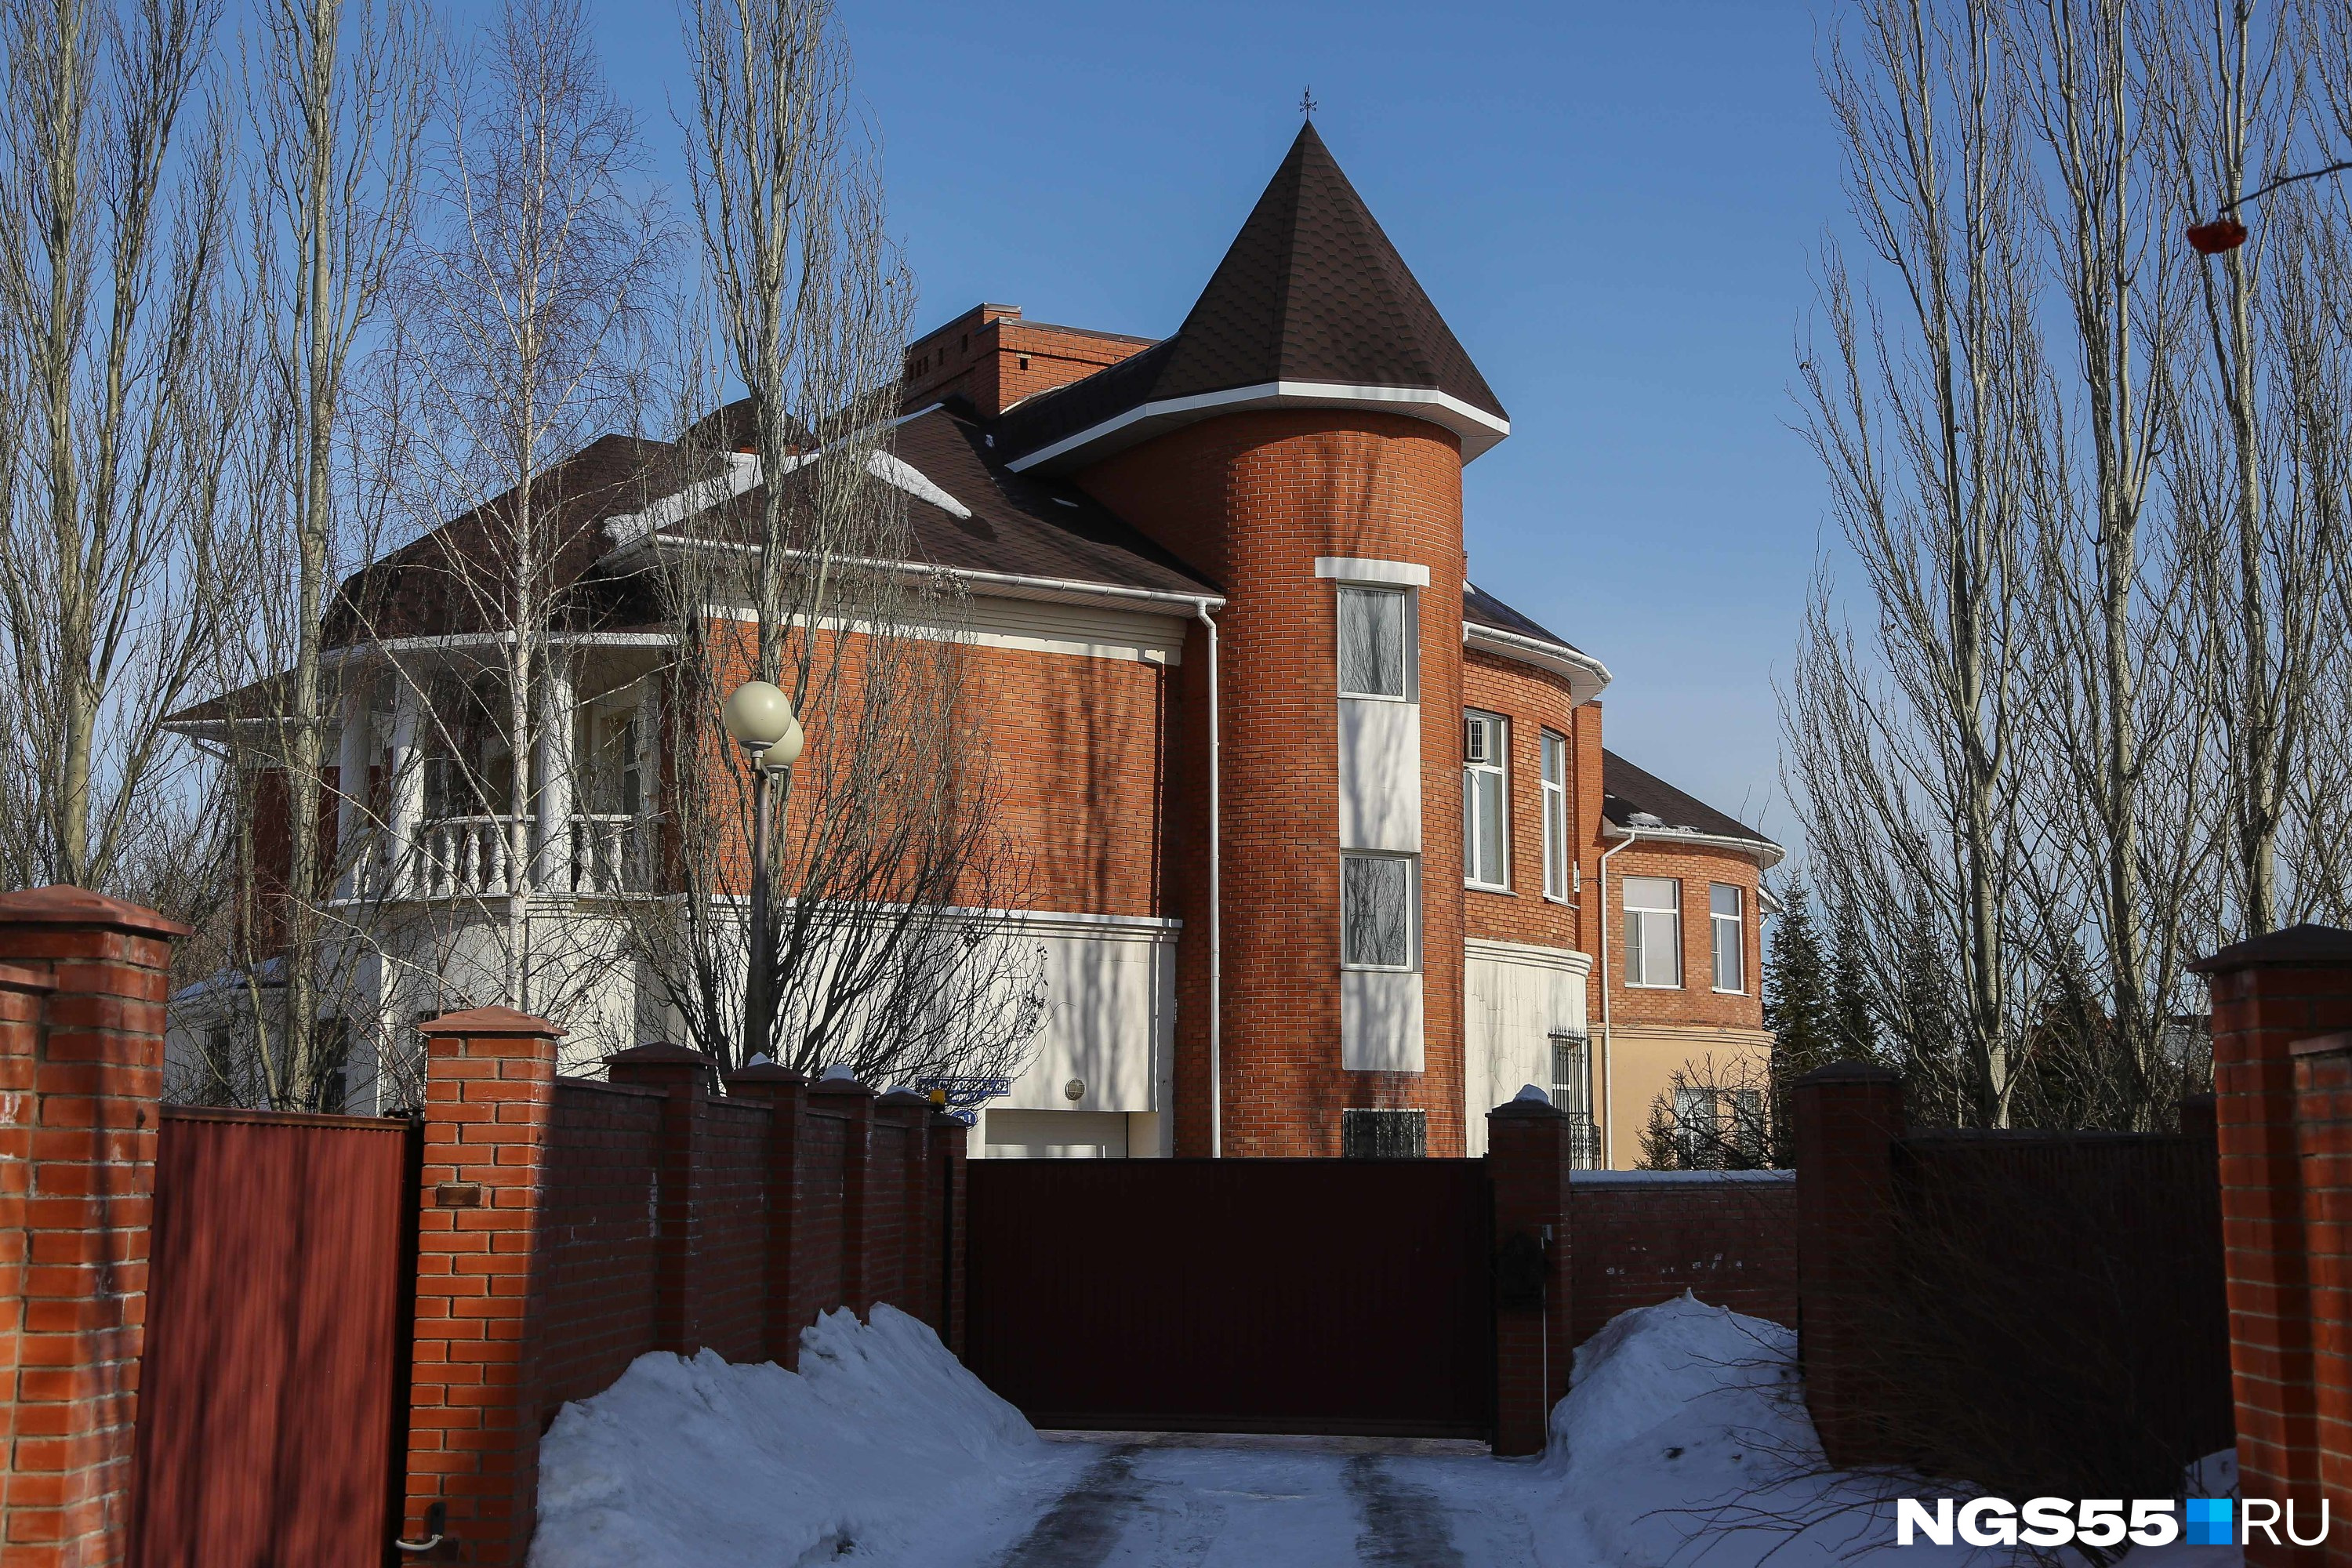 Подобная архитектура на Суворова встречается повсюду, особенно популярны здесь башенки